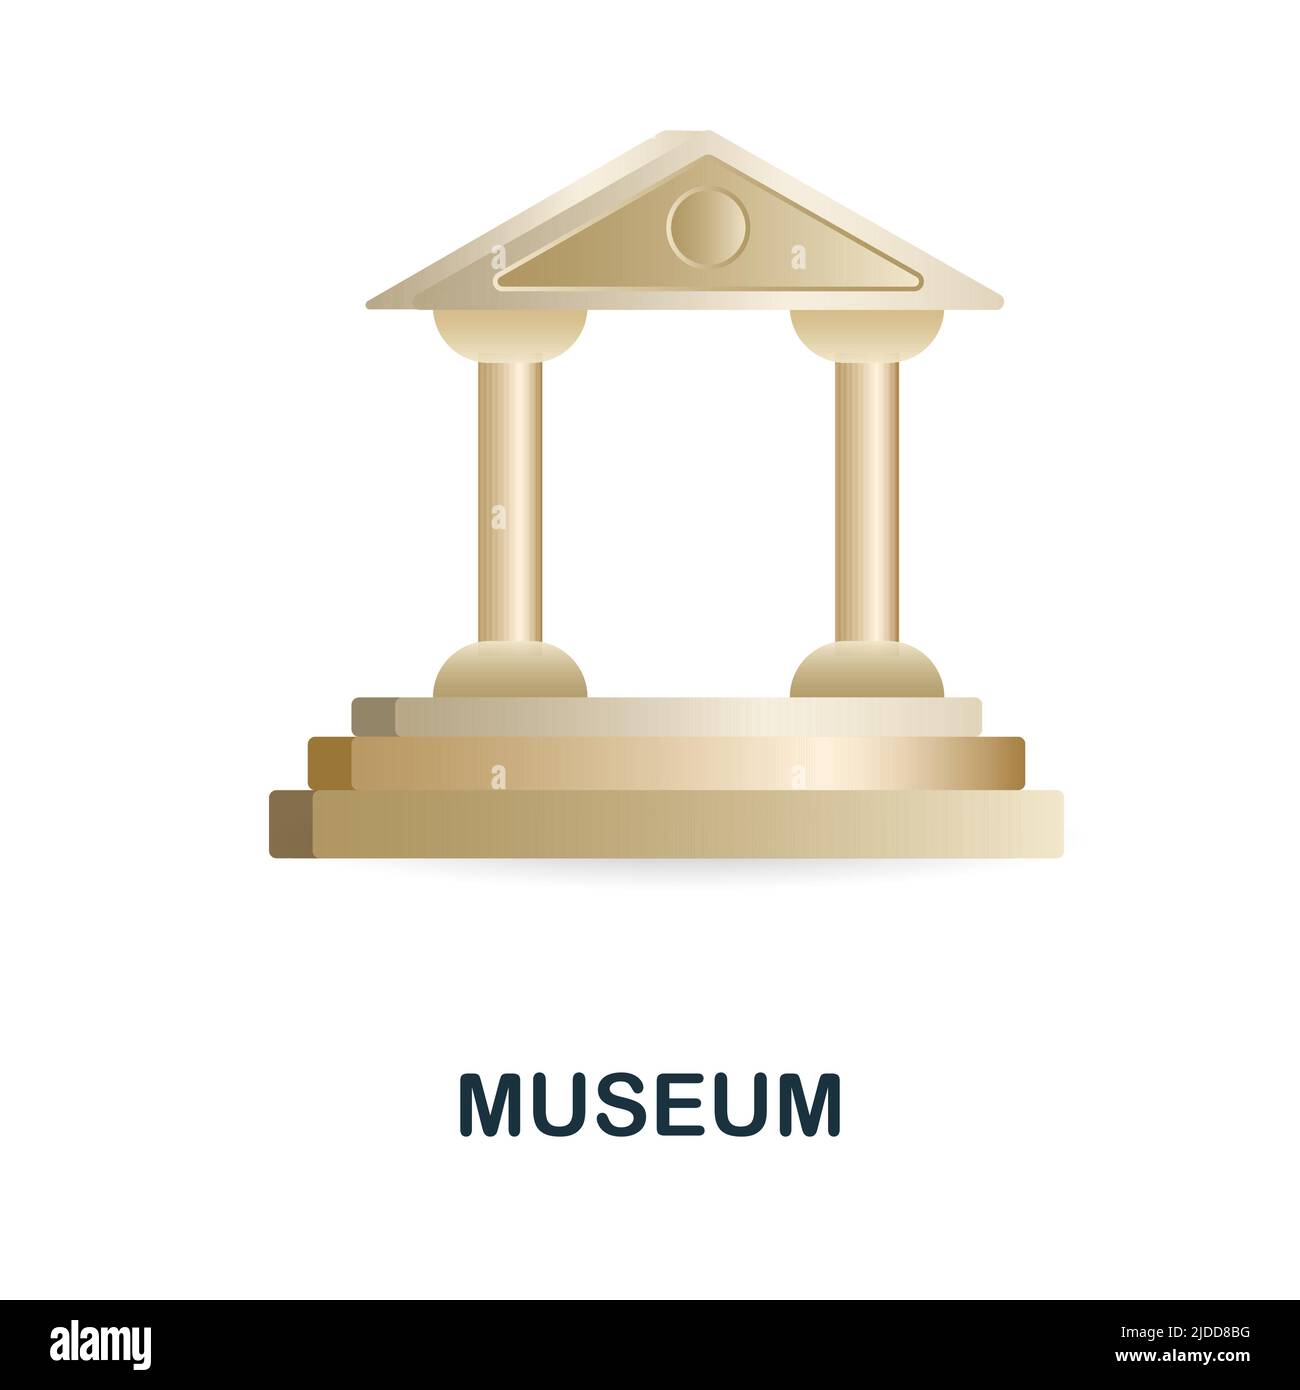 Museum 3D Icon élément simple de la collection de bâtiments. Icône Creative Museum pour la conception Web, les modèles, les infographies et bien plus encore Illustration de Vecteur